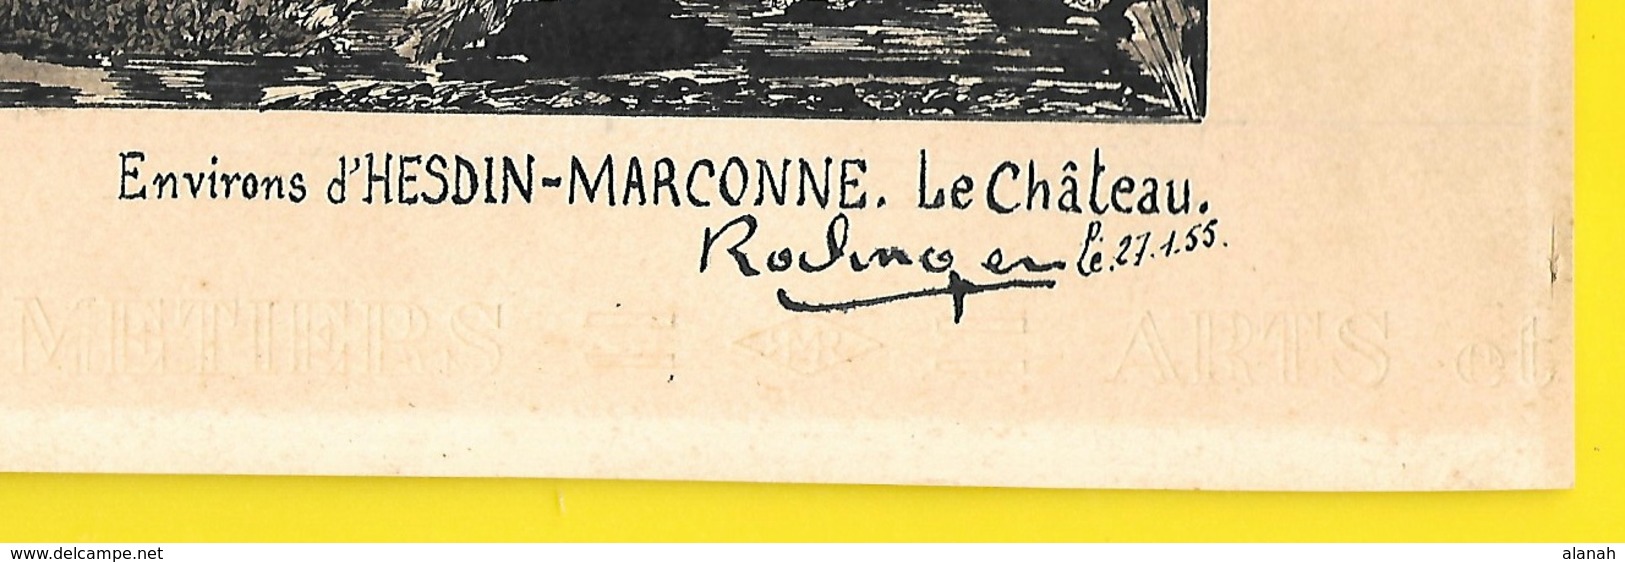 HESDIN-MARCONNE Authentique Dessin à L'Encre Du Château 1955 Signé Roclinger? - Prints & Engravings